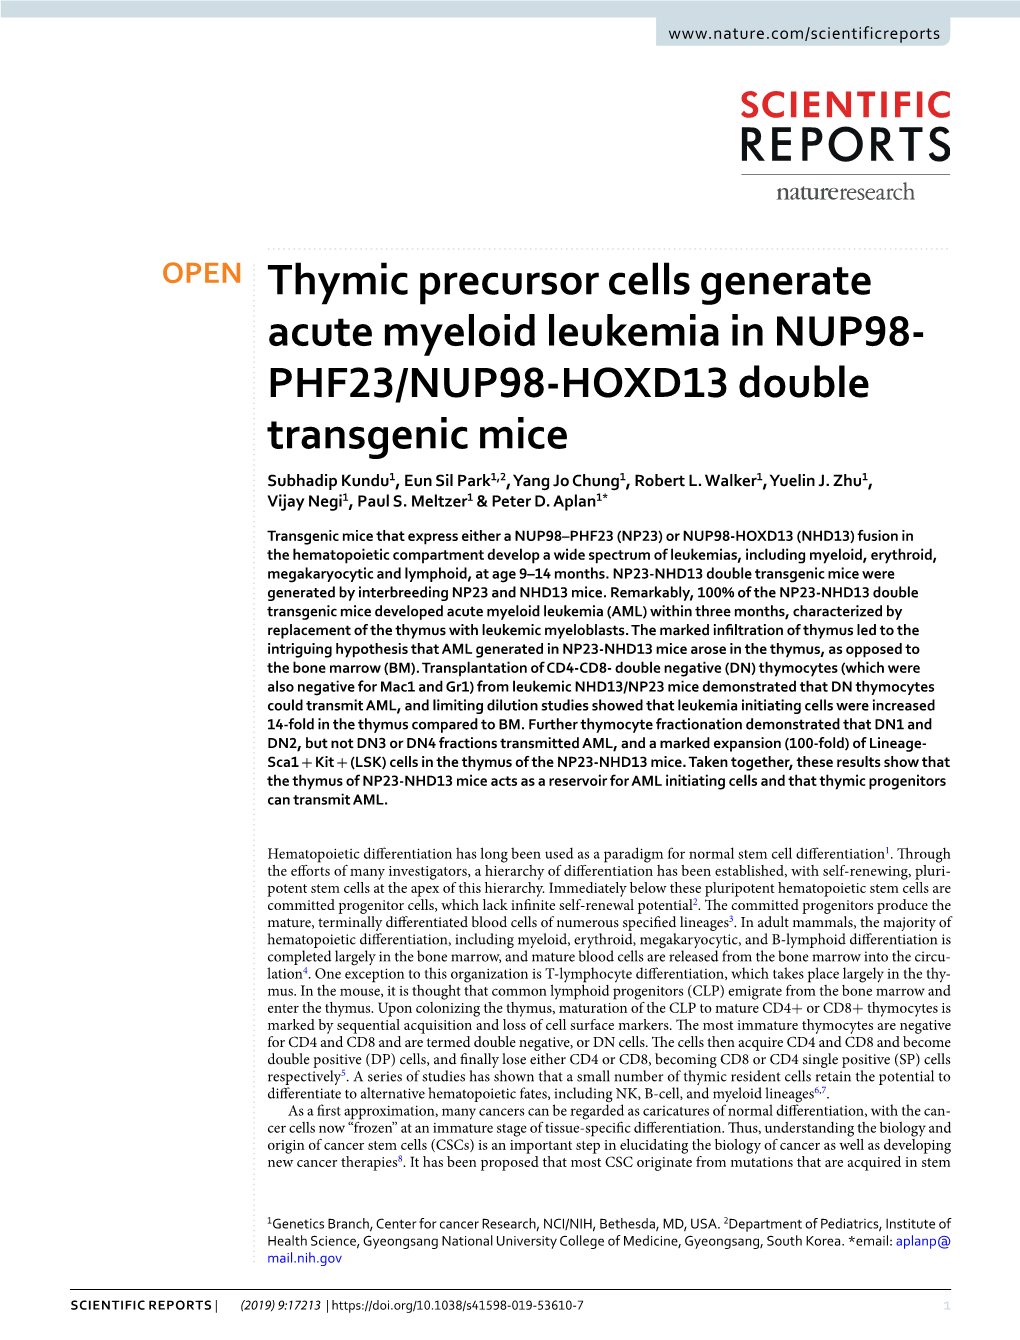 Thymic Precursor Cells Generate Acute Myeloid Leukemia in NUP98- PHF23/NUP98-HOXD13 Double Transgenic Mice Subhadip Kundu1, Eun Sil Park1,2, Yang Jo Chung1, Robert L